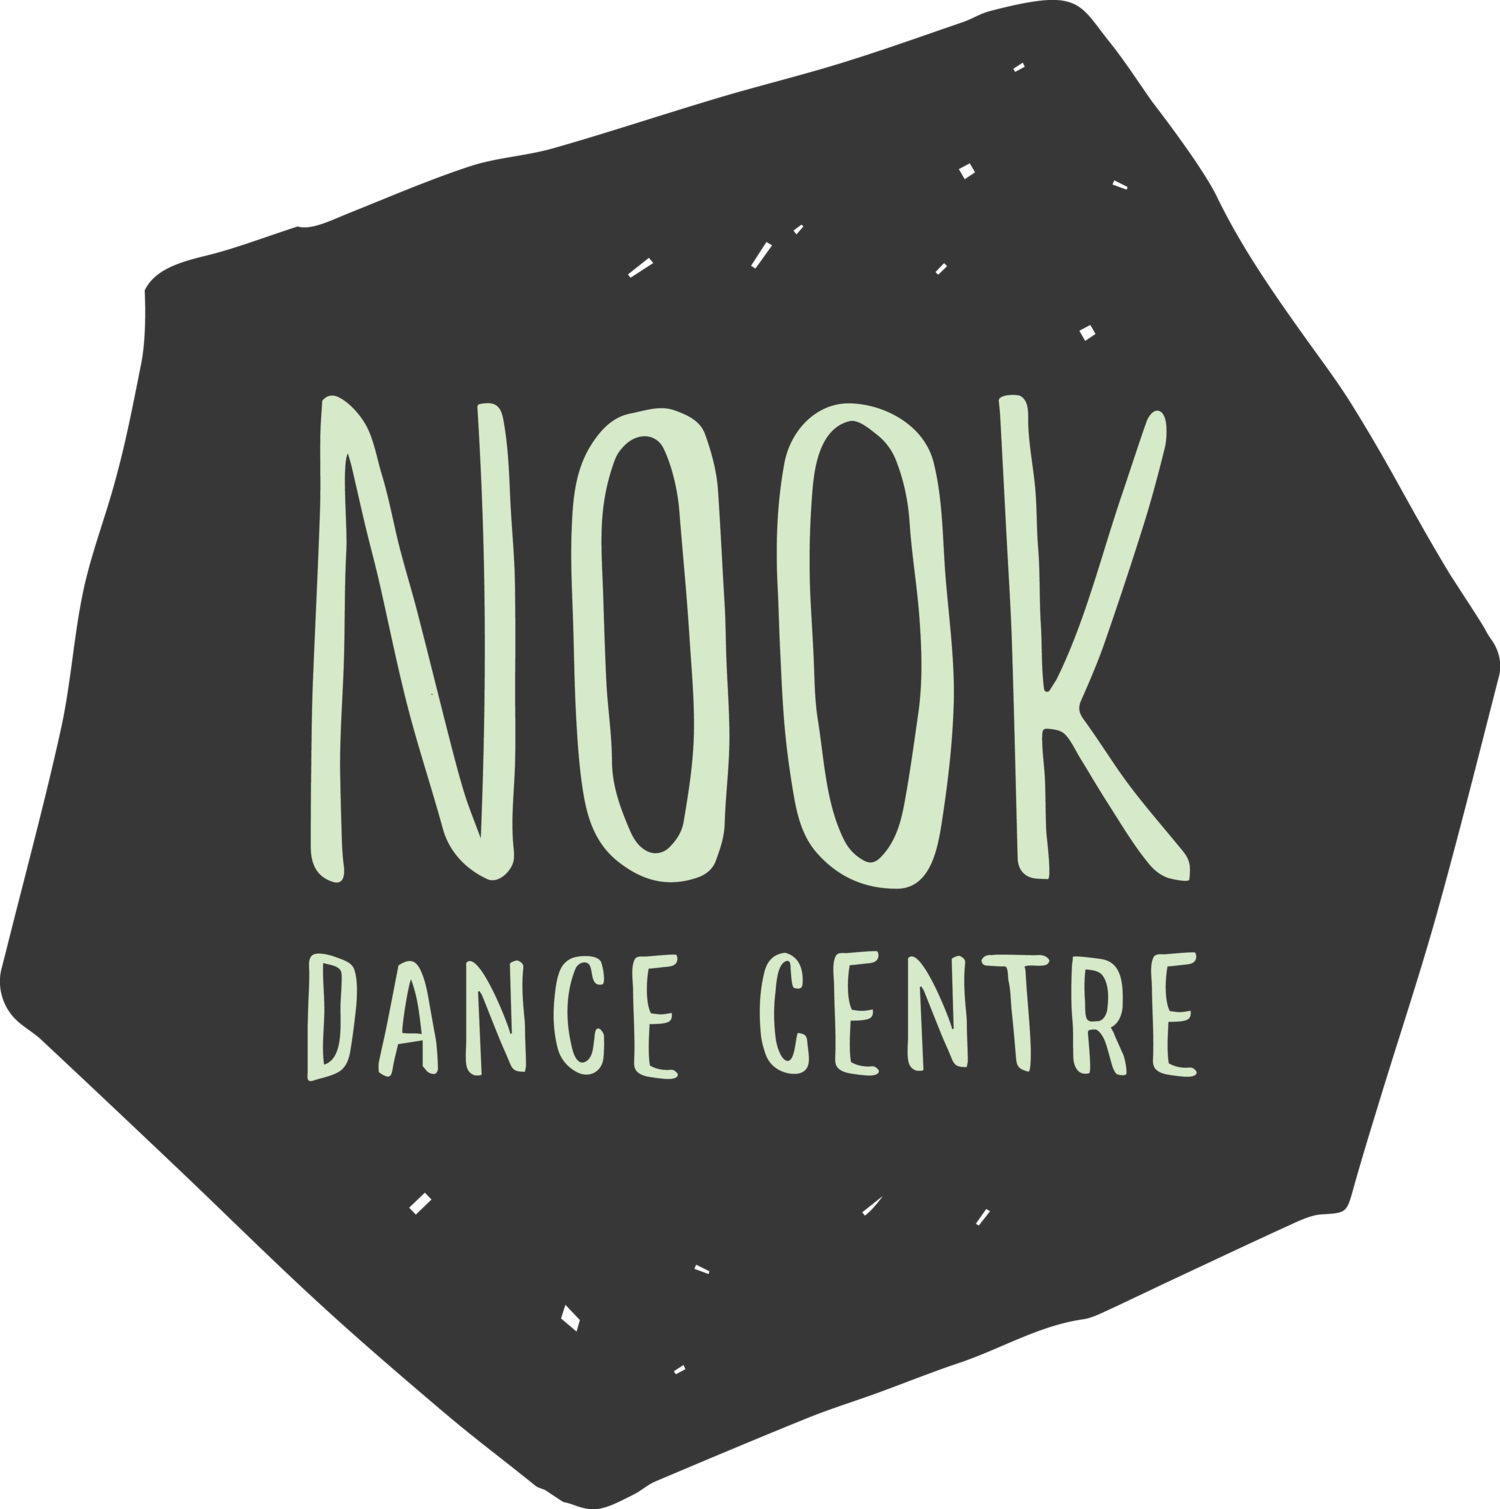 Nook Dance Centre